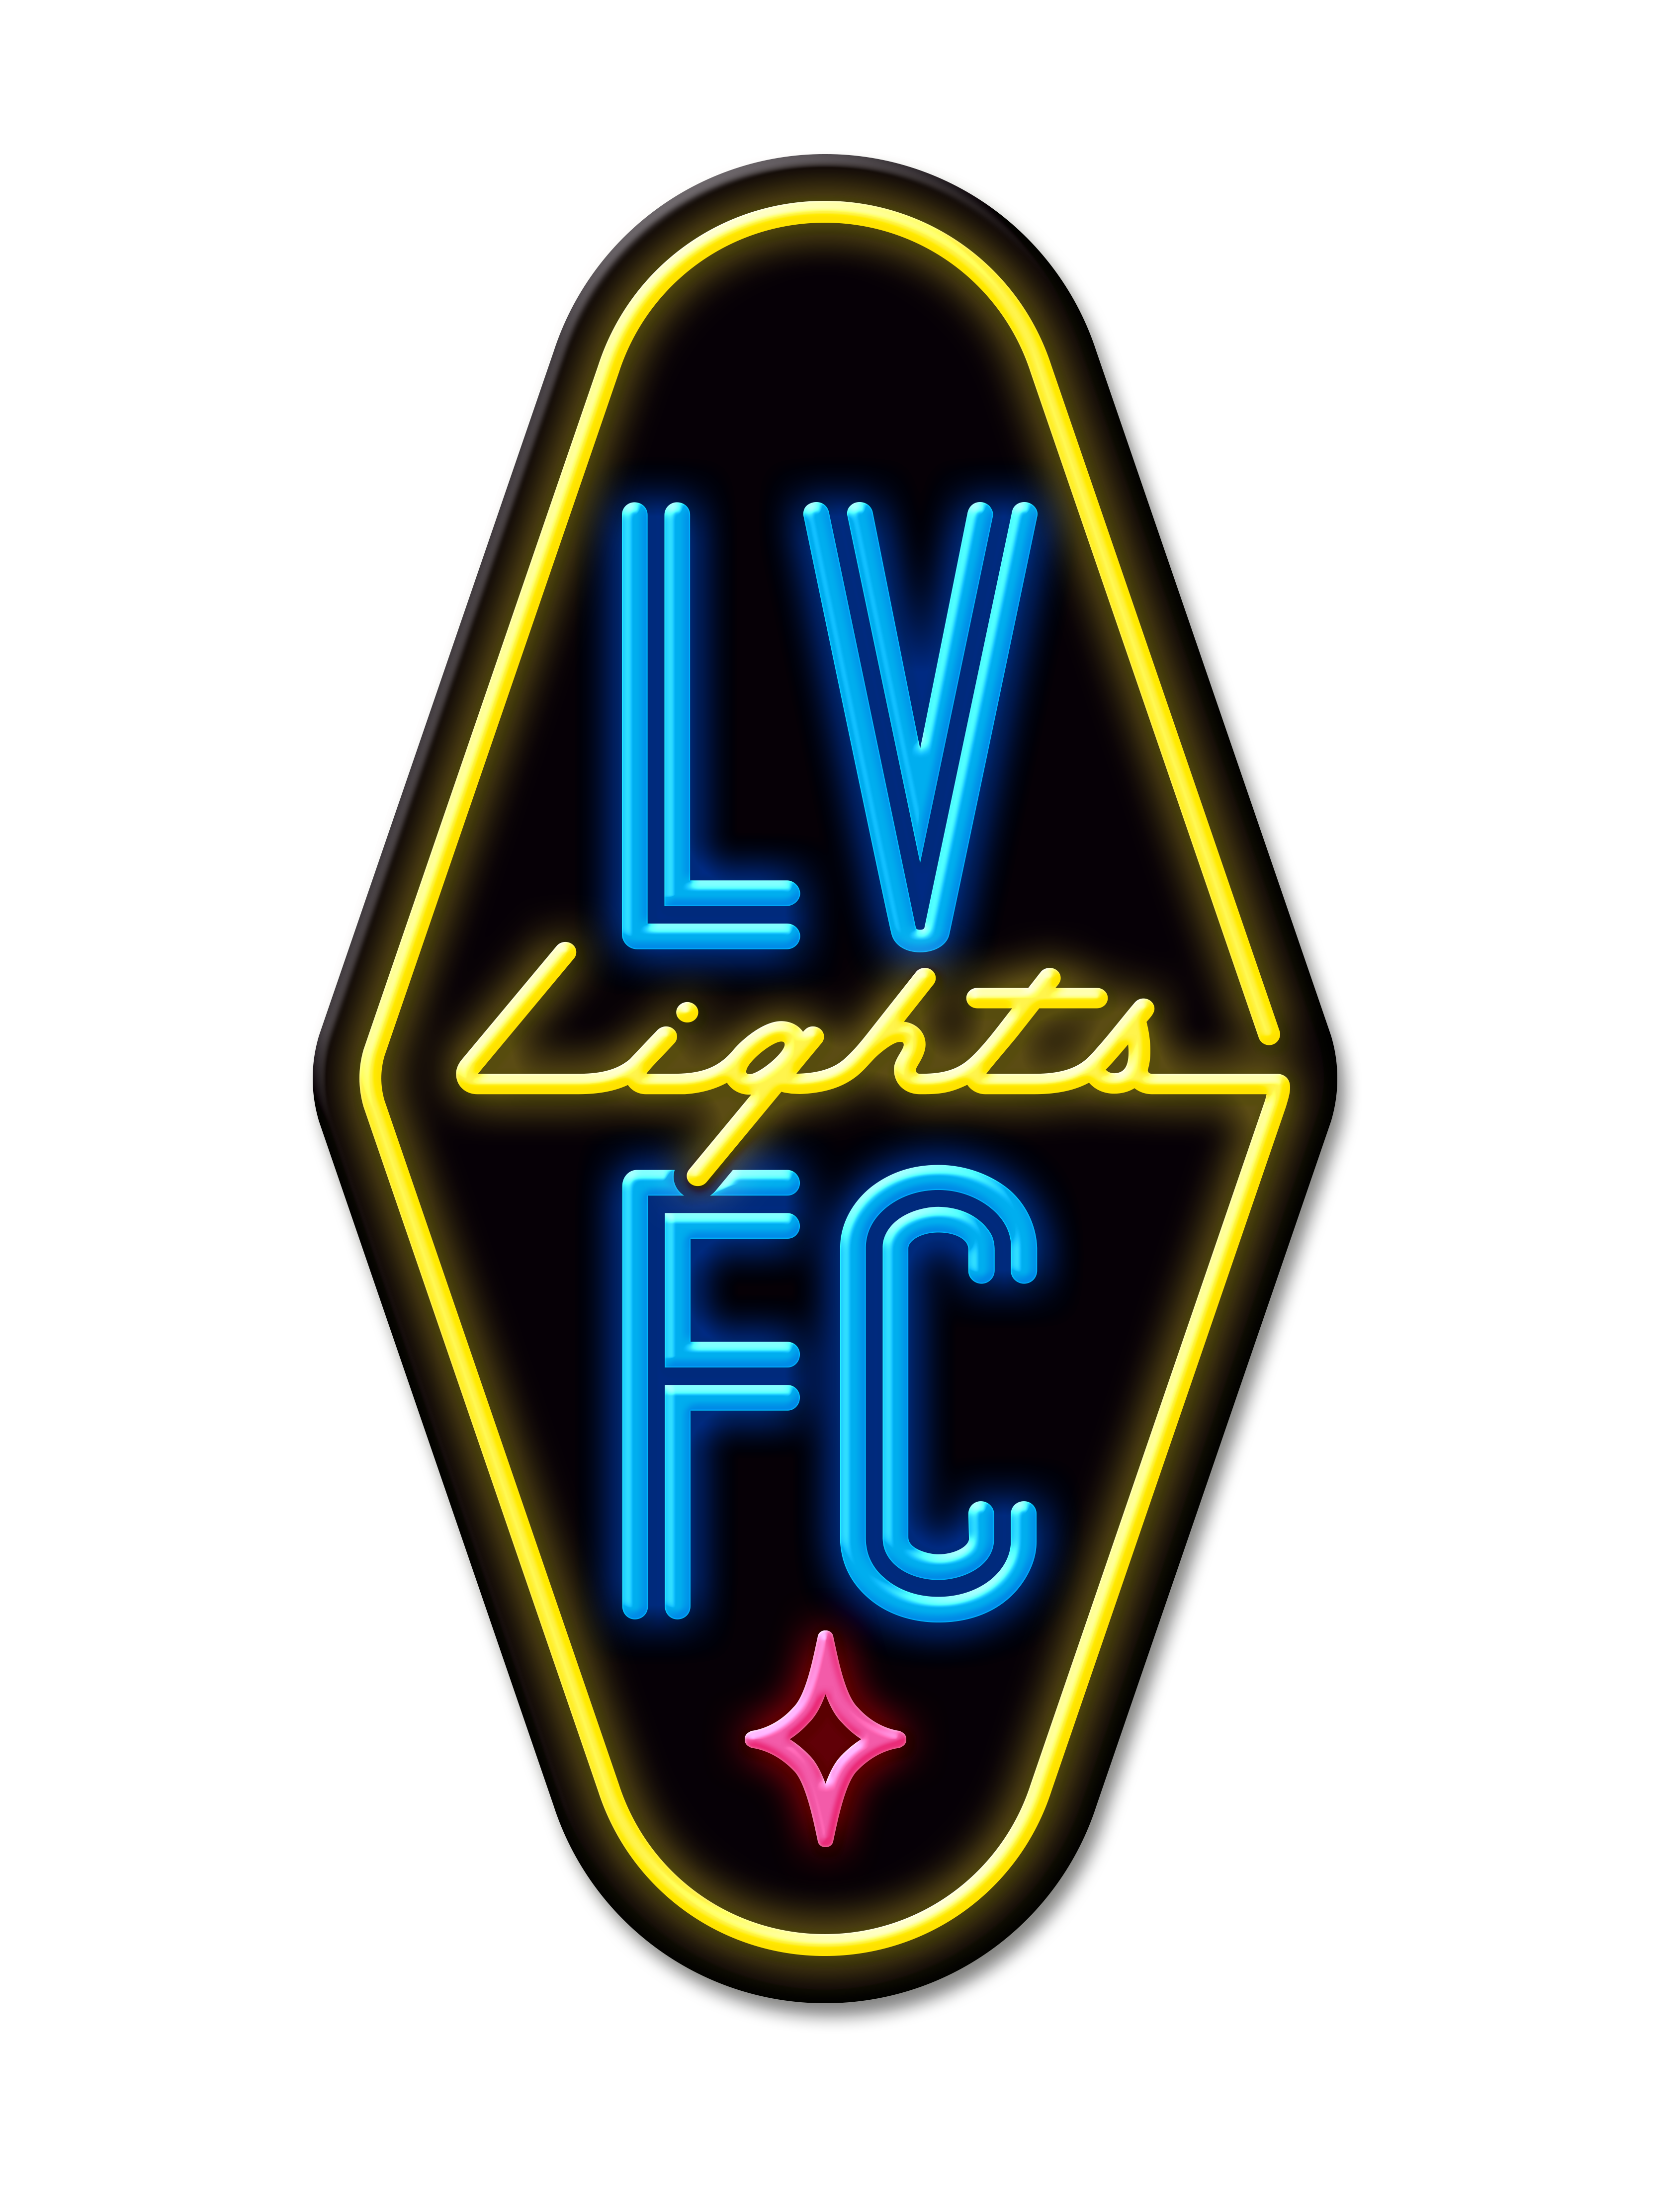 8.12.2023  Las Vegas Lights FC vs. Loudoun United FC - Game